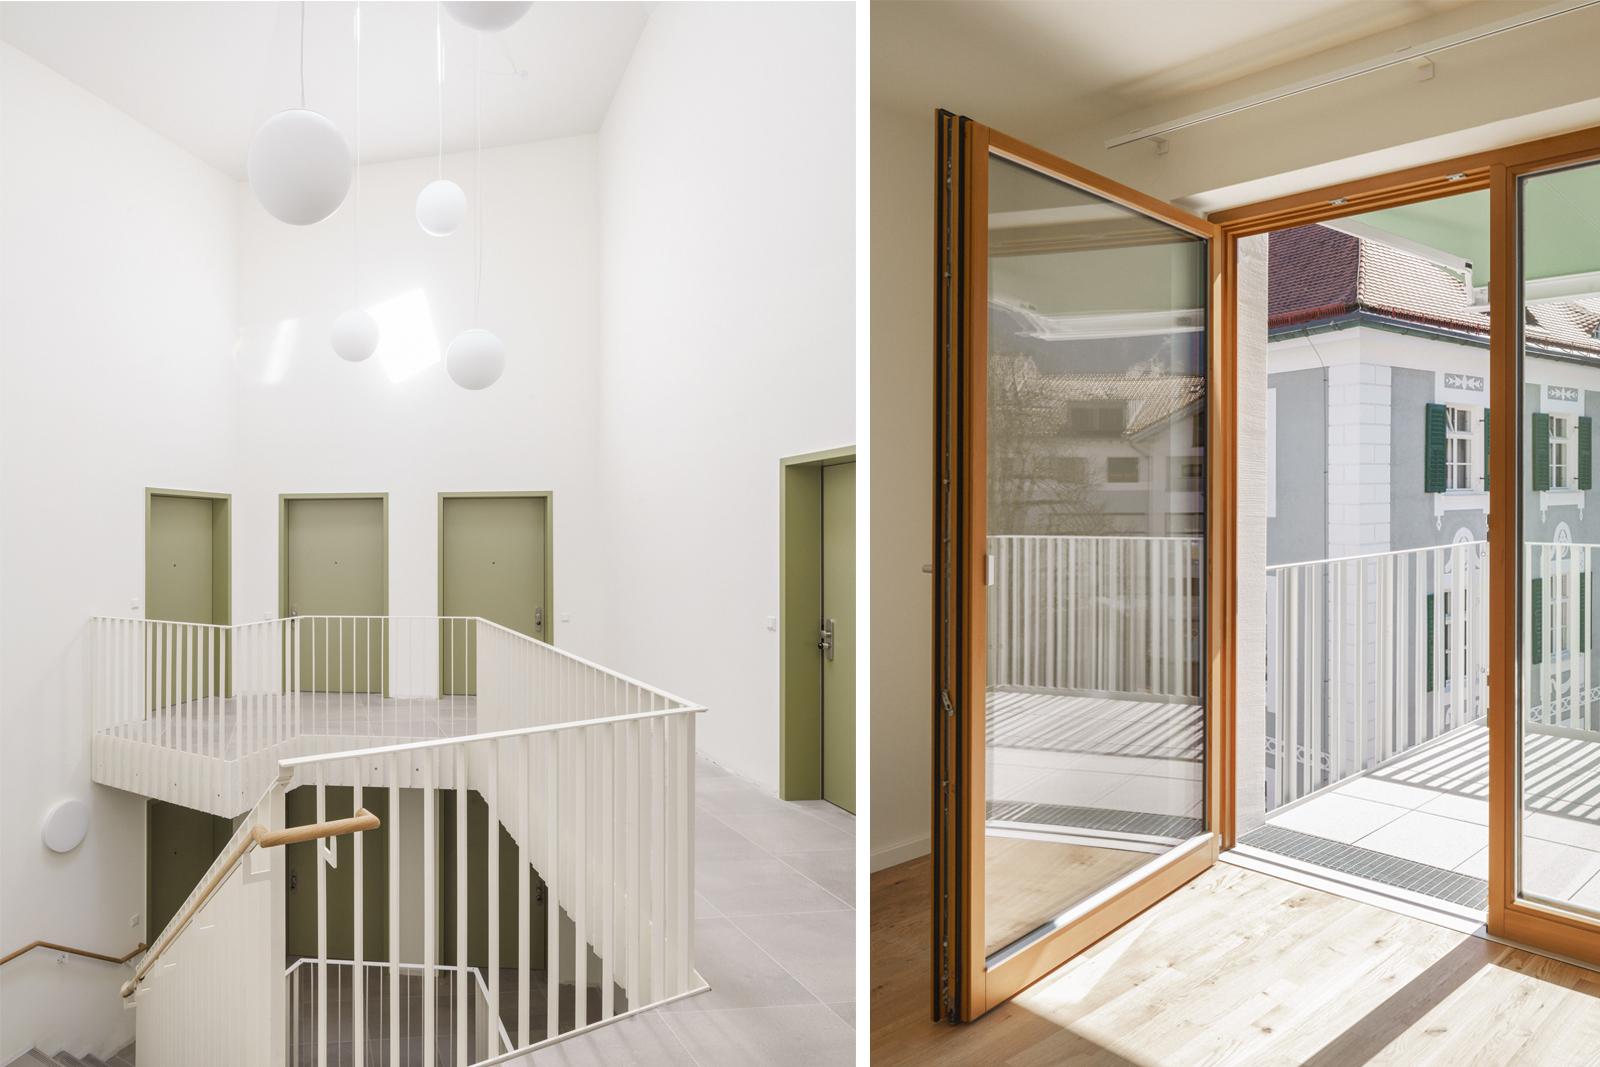 Vom weißen Treppenhaus aus führen grüne Eingangstüren in die Wohnungen. In der Wohnung selbst führt eine schwellenlose Balkontür ins Freie.